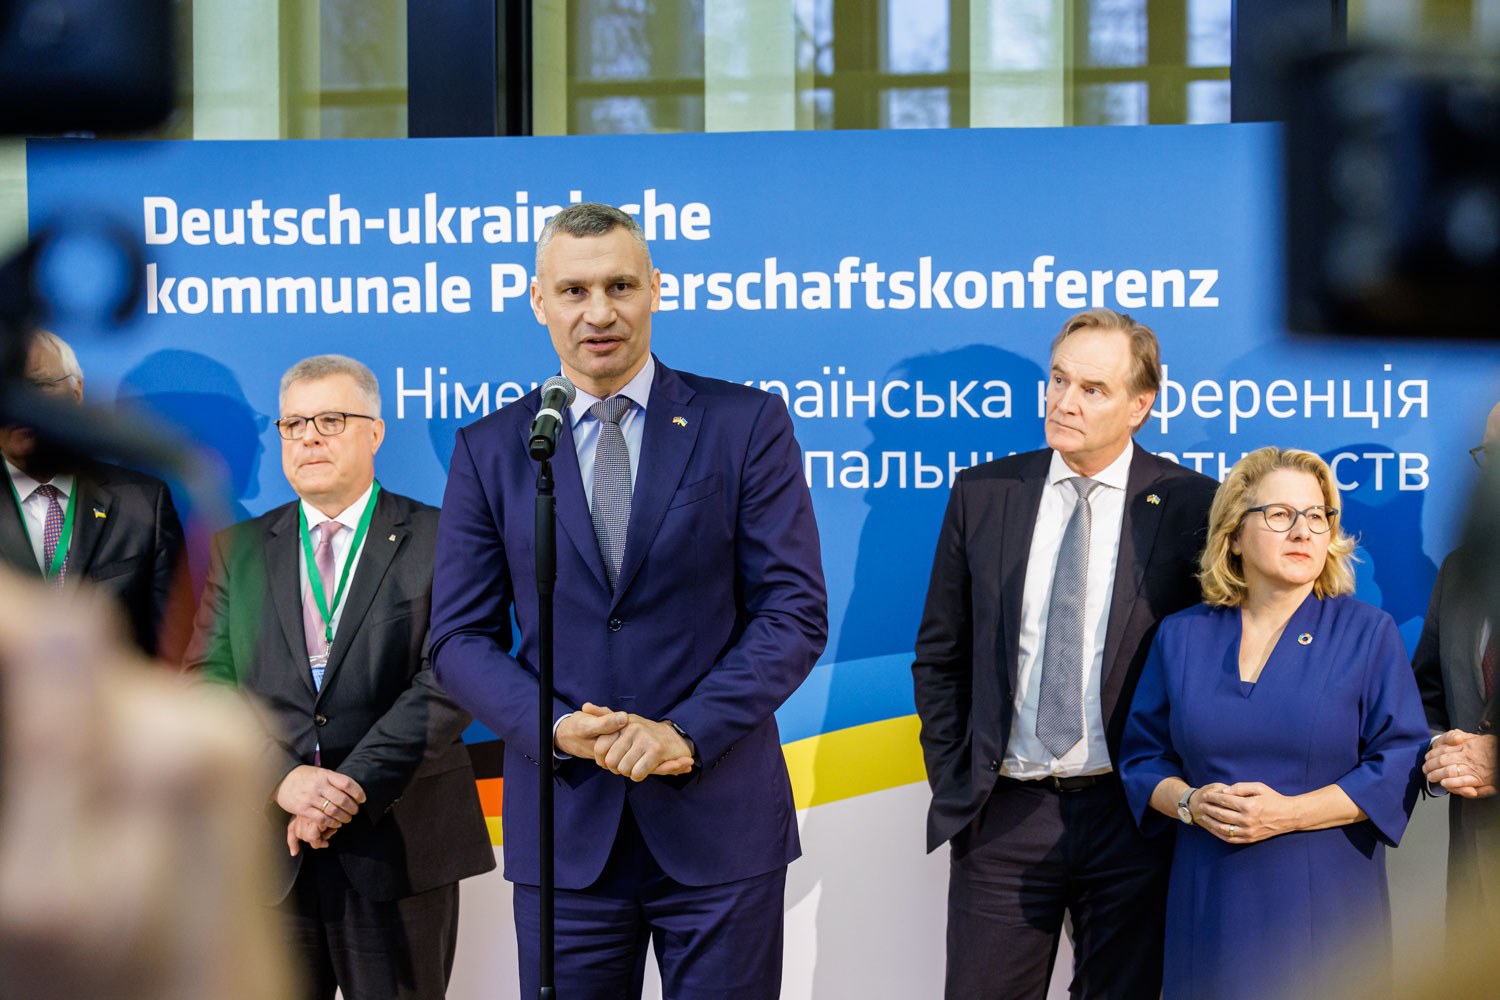   Botschaft: Hoffnung | Die deutsch-ukrainische kommunale Partnerschaftskonferenz in Leipzig richtet den Blick bereits auf die Zeit nach dem Krieg  